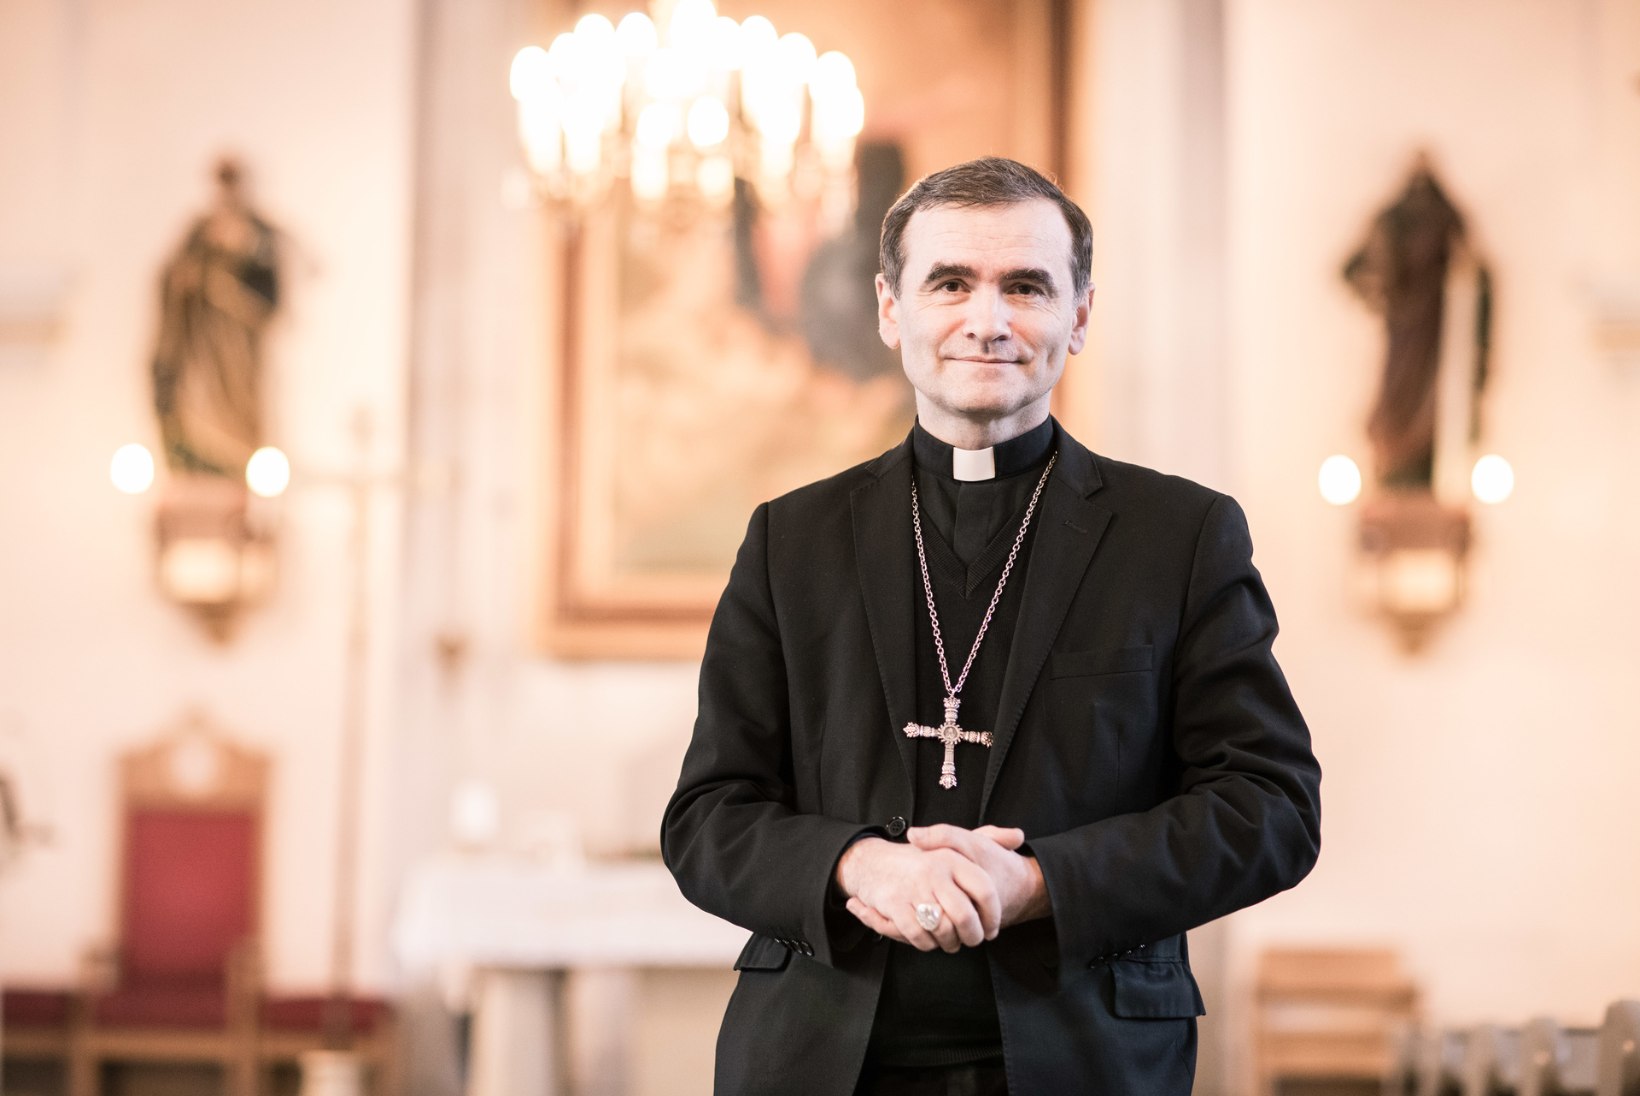 Piiskop Philippe Jourdan: Eesti inimesed on praegu vaimsete väärtuste otsinguil